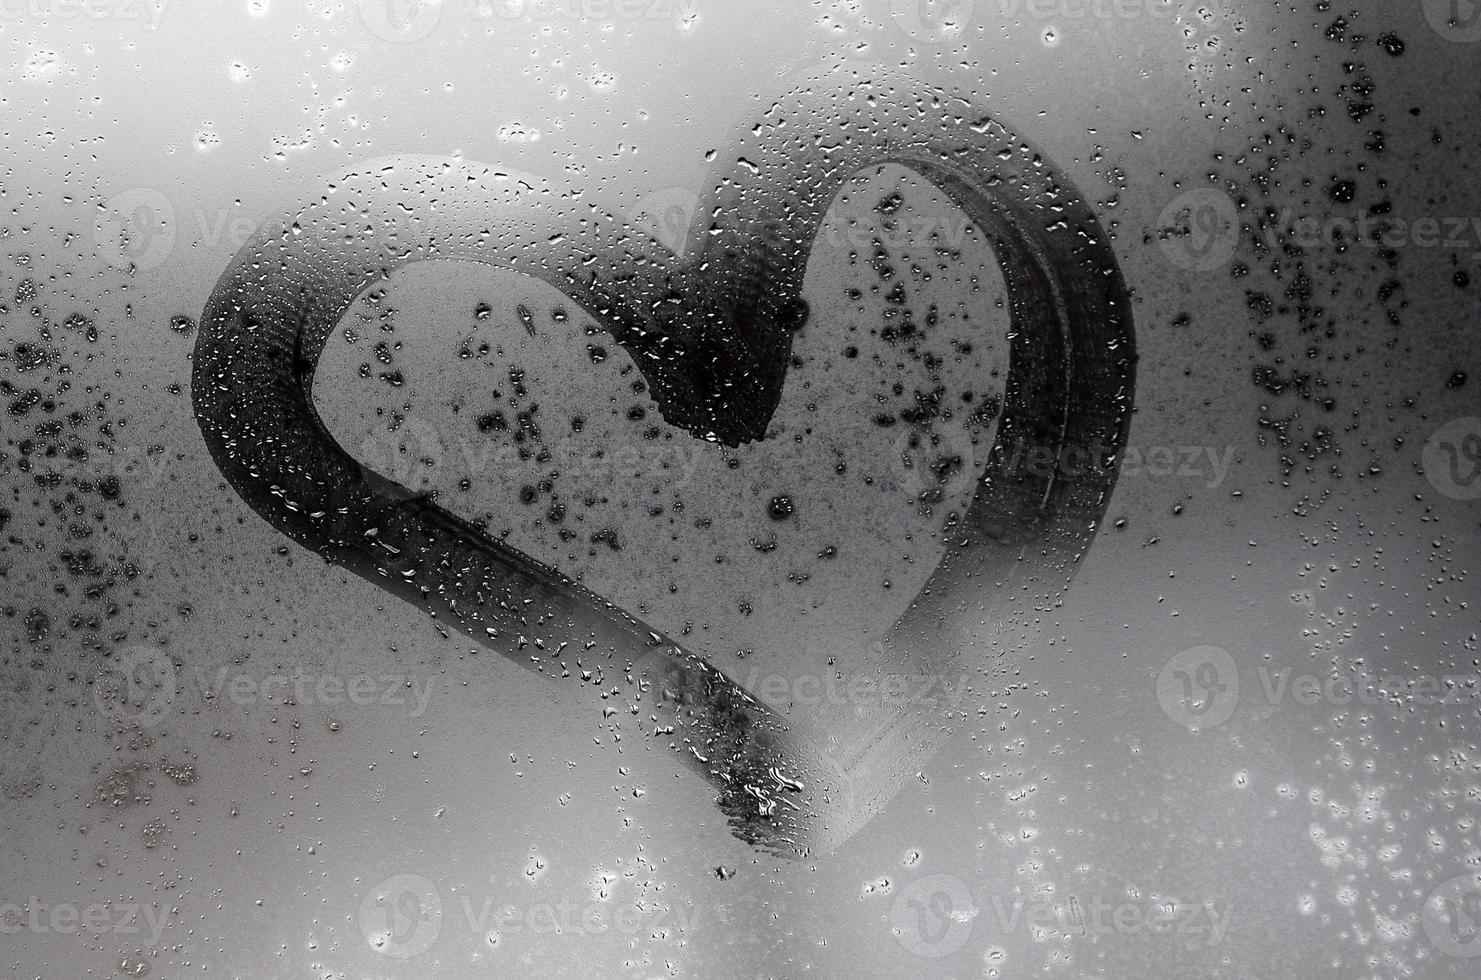 le coeur est peint sur le verre embué en hiver photo